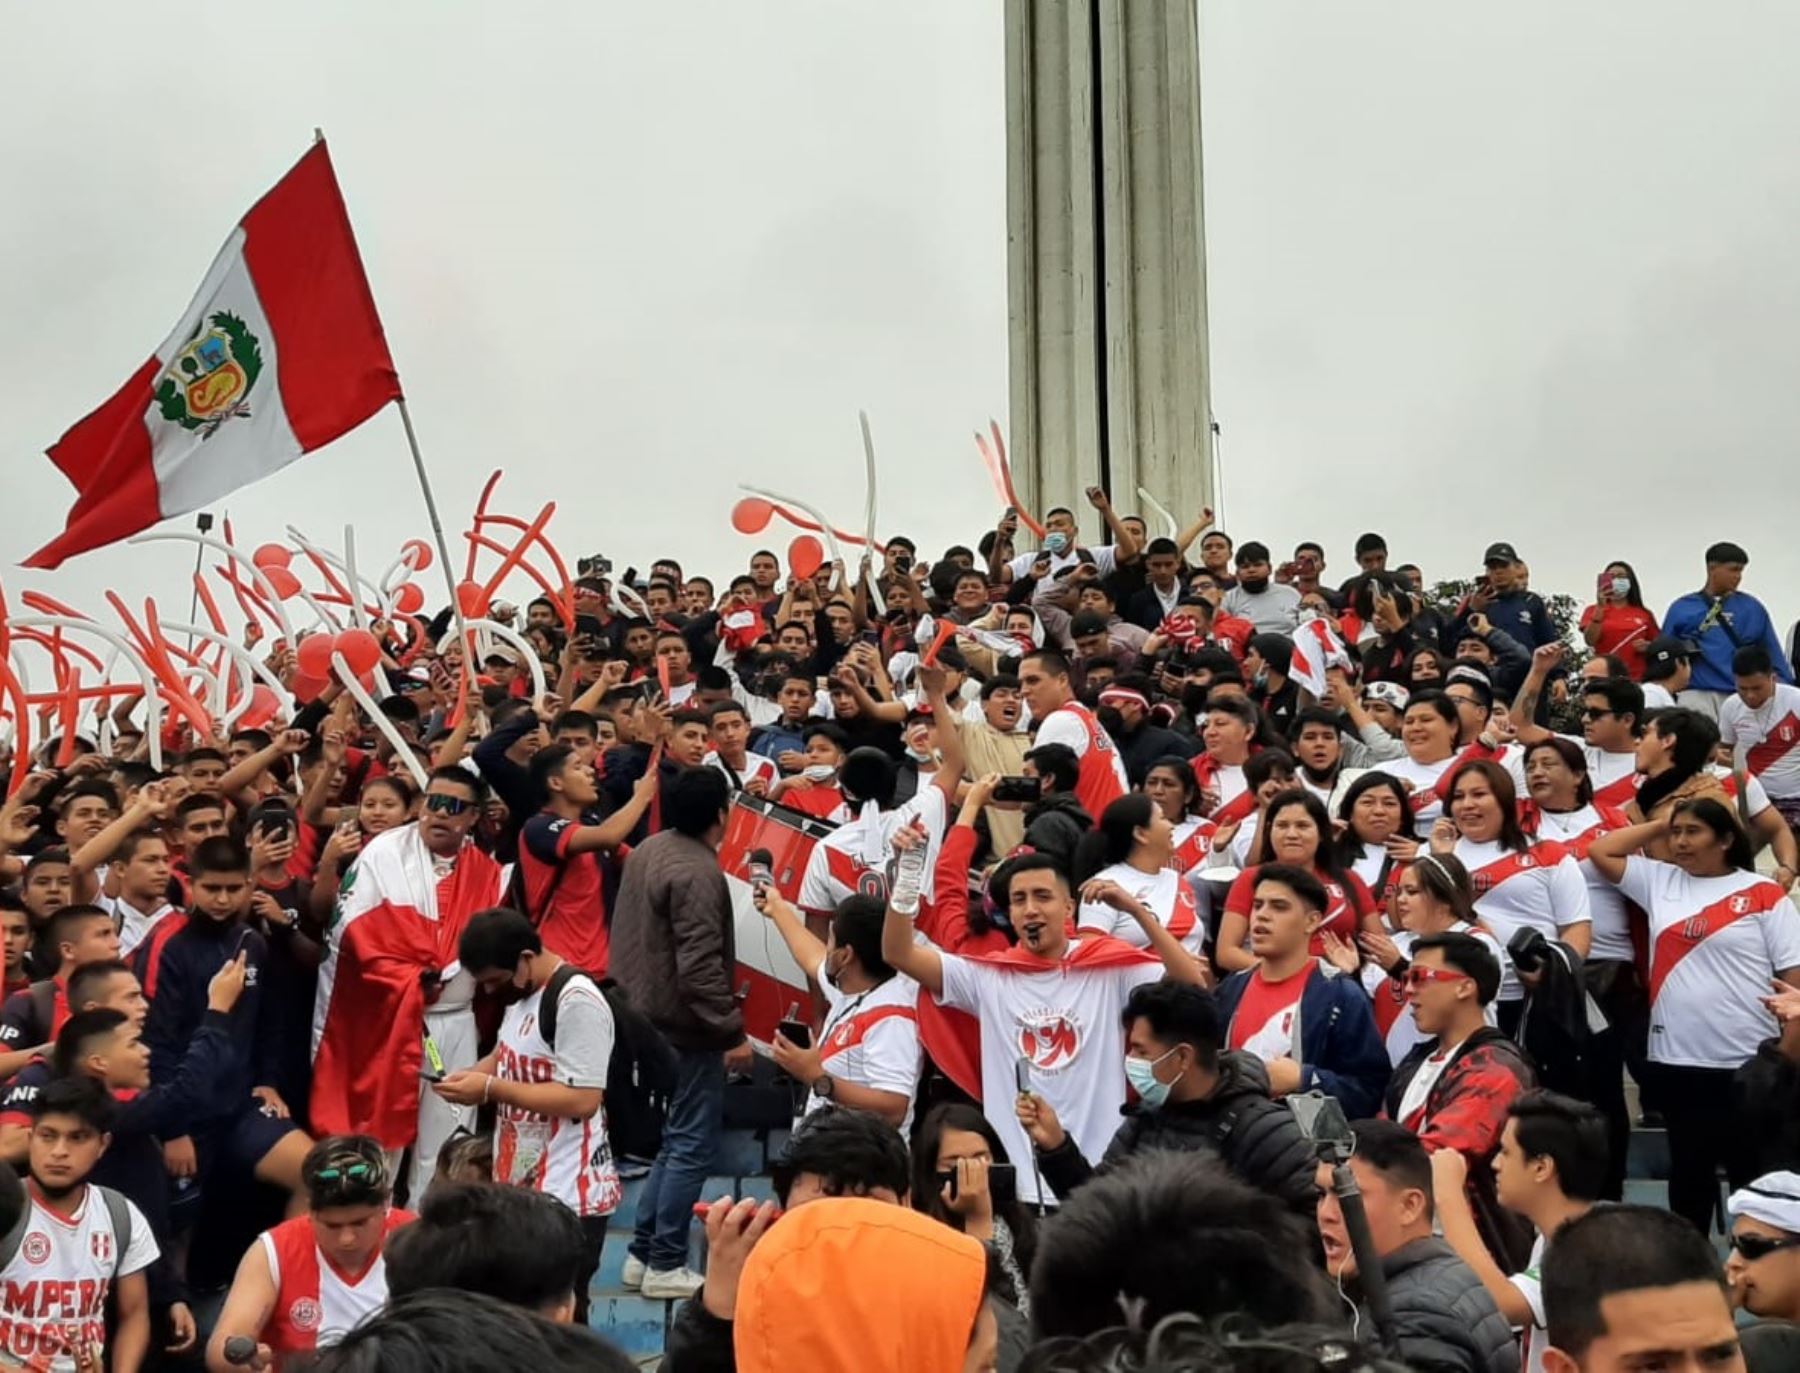 Repechaje: trujillanos arman la fiesta y se concentran para ver el partido Perú-Australia